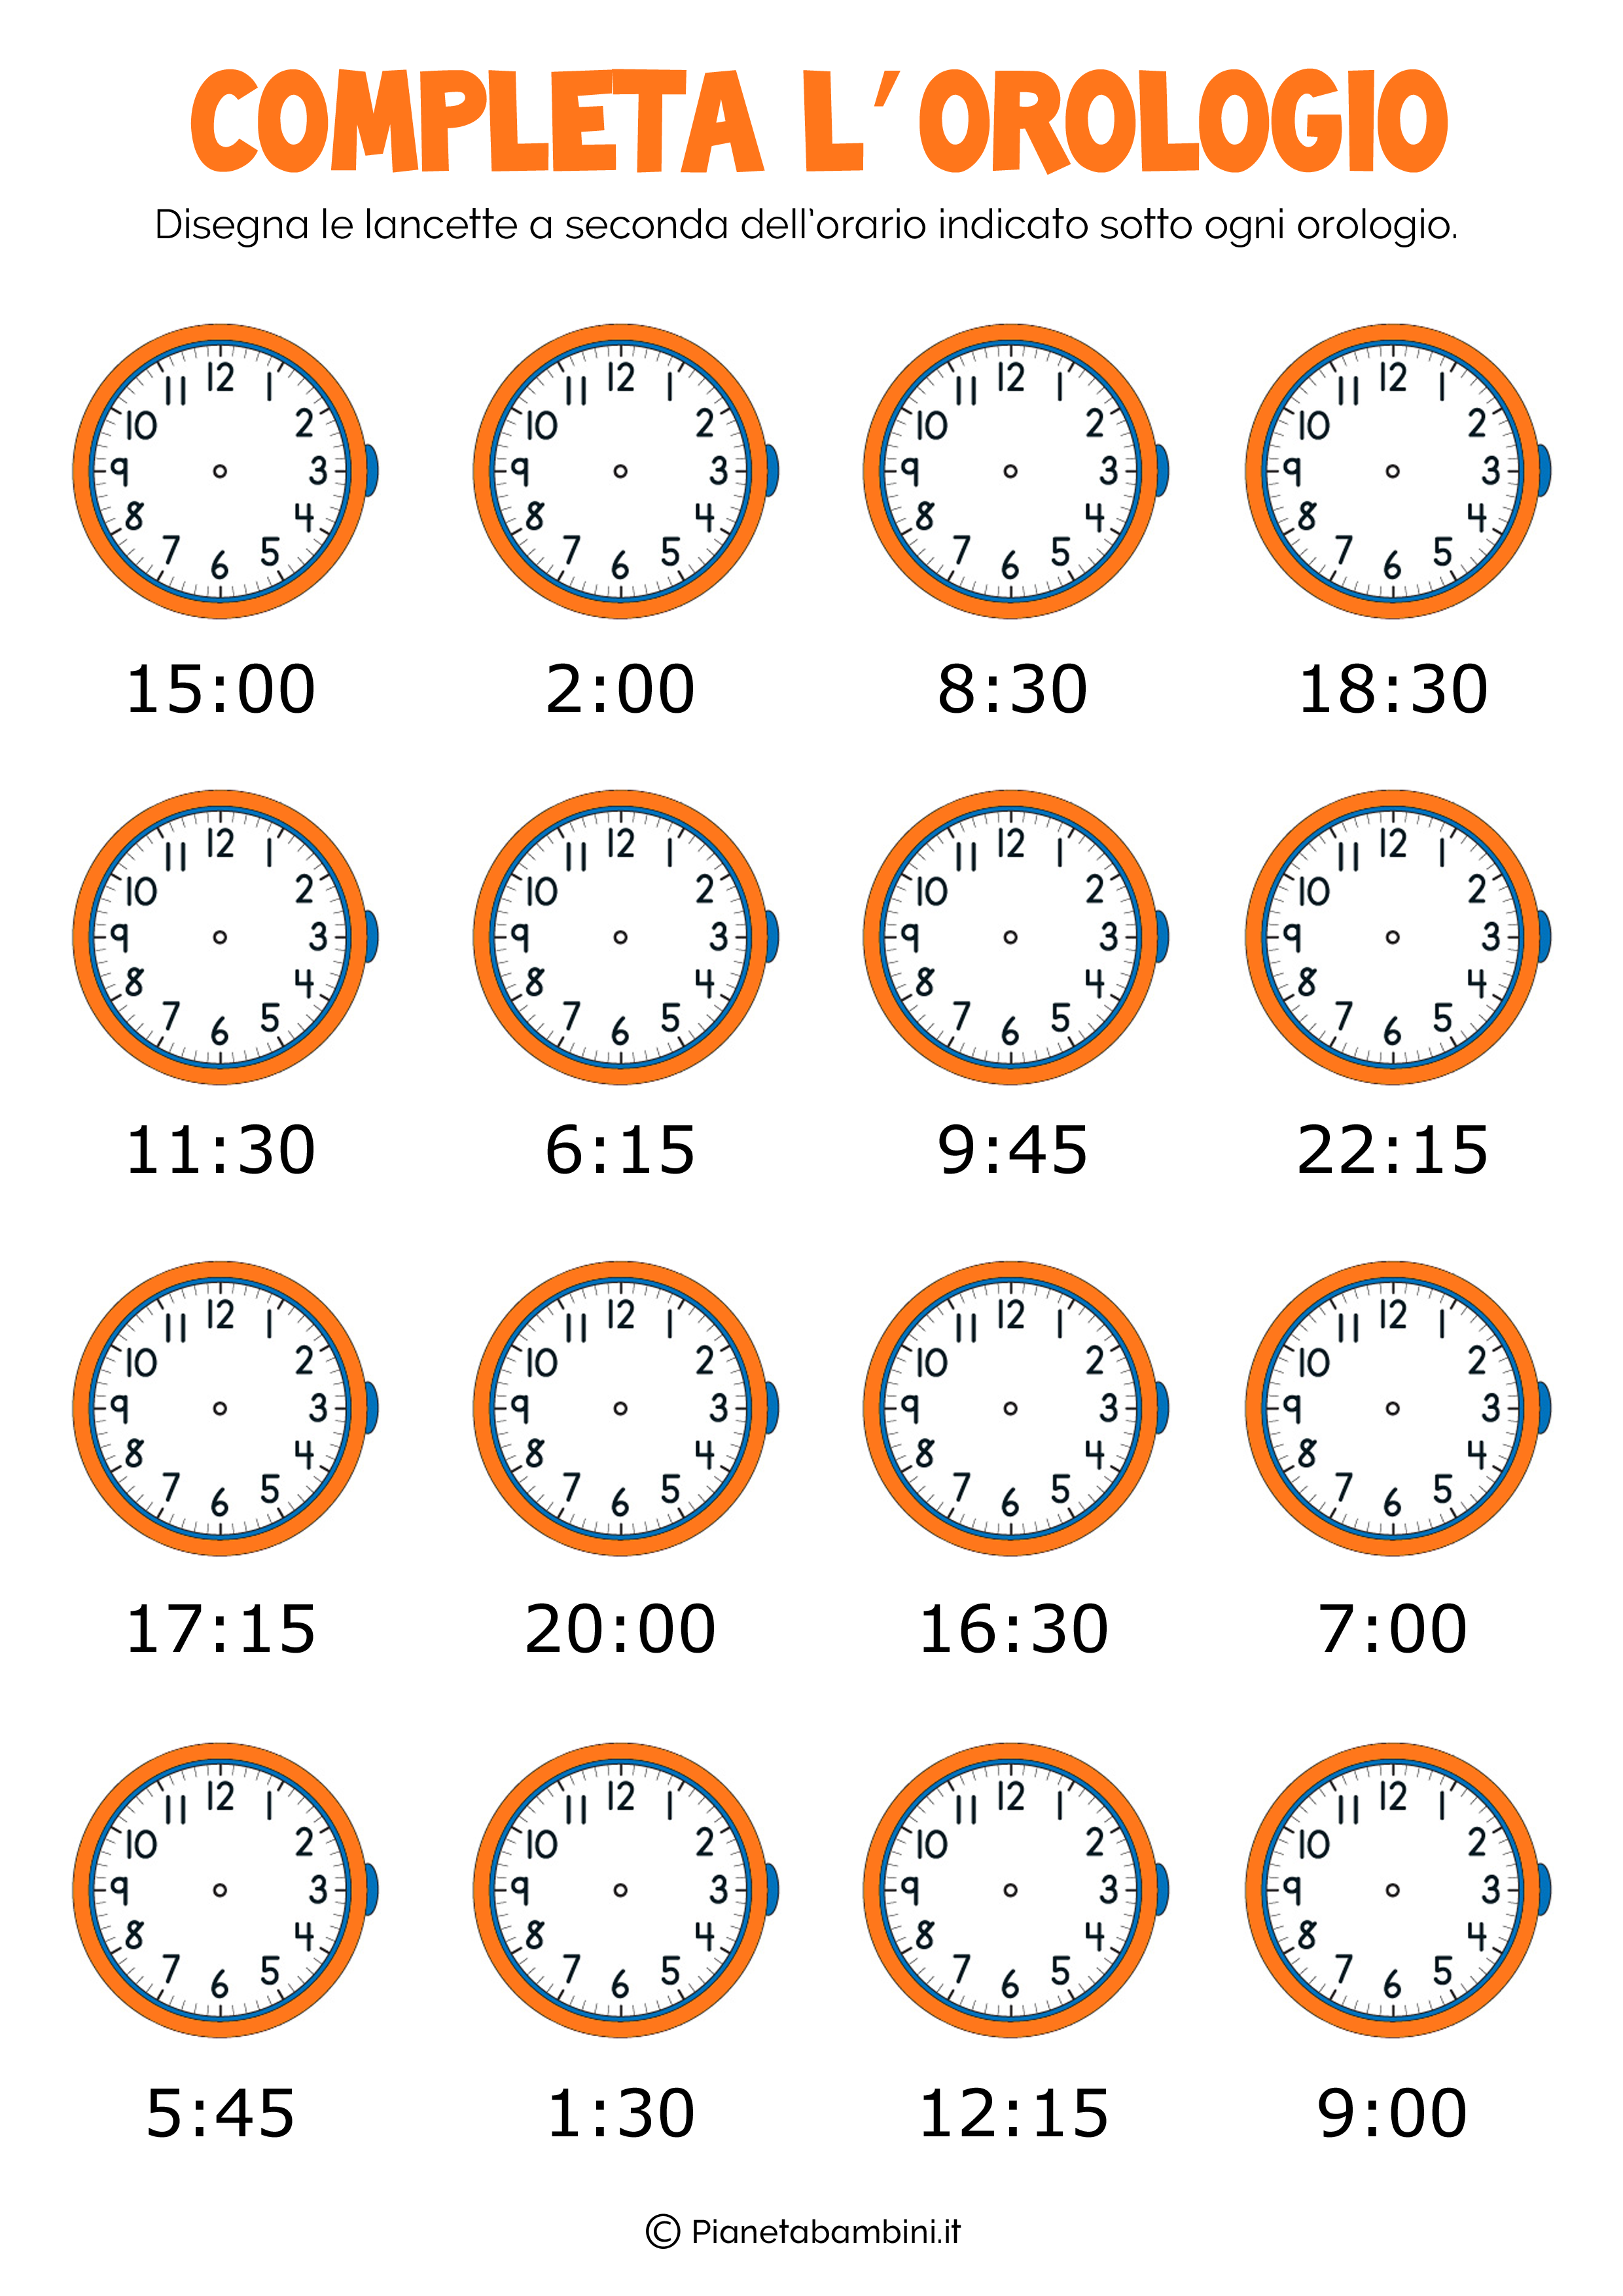 Disegna Lancette Orologio 1 Orologi E Cronografi